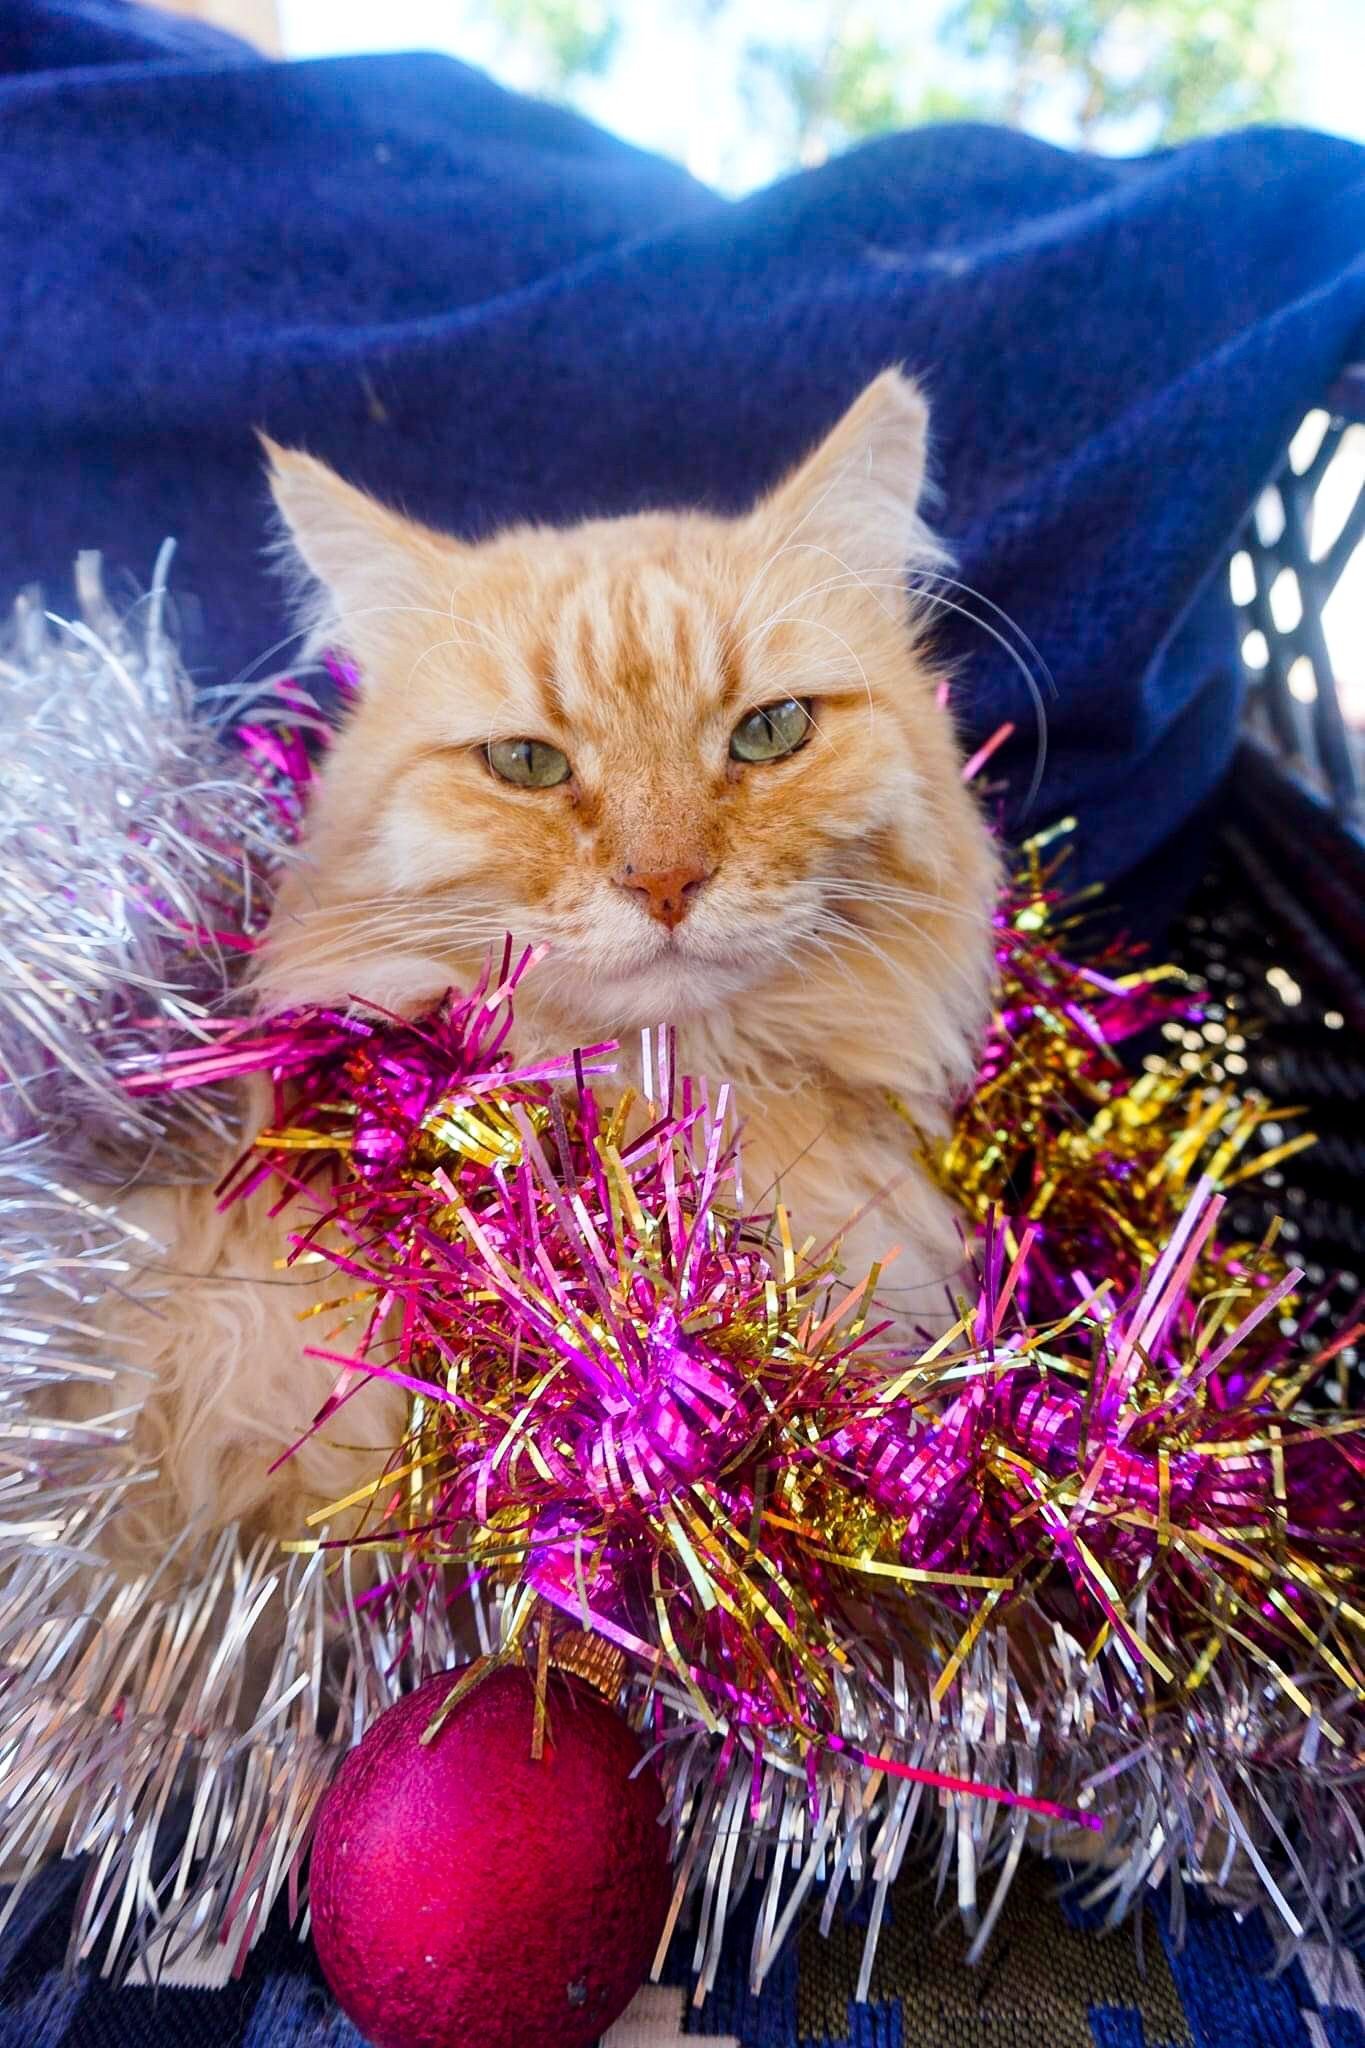 Dahab Cat Marmalade at Christmas